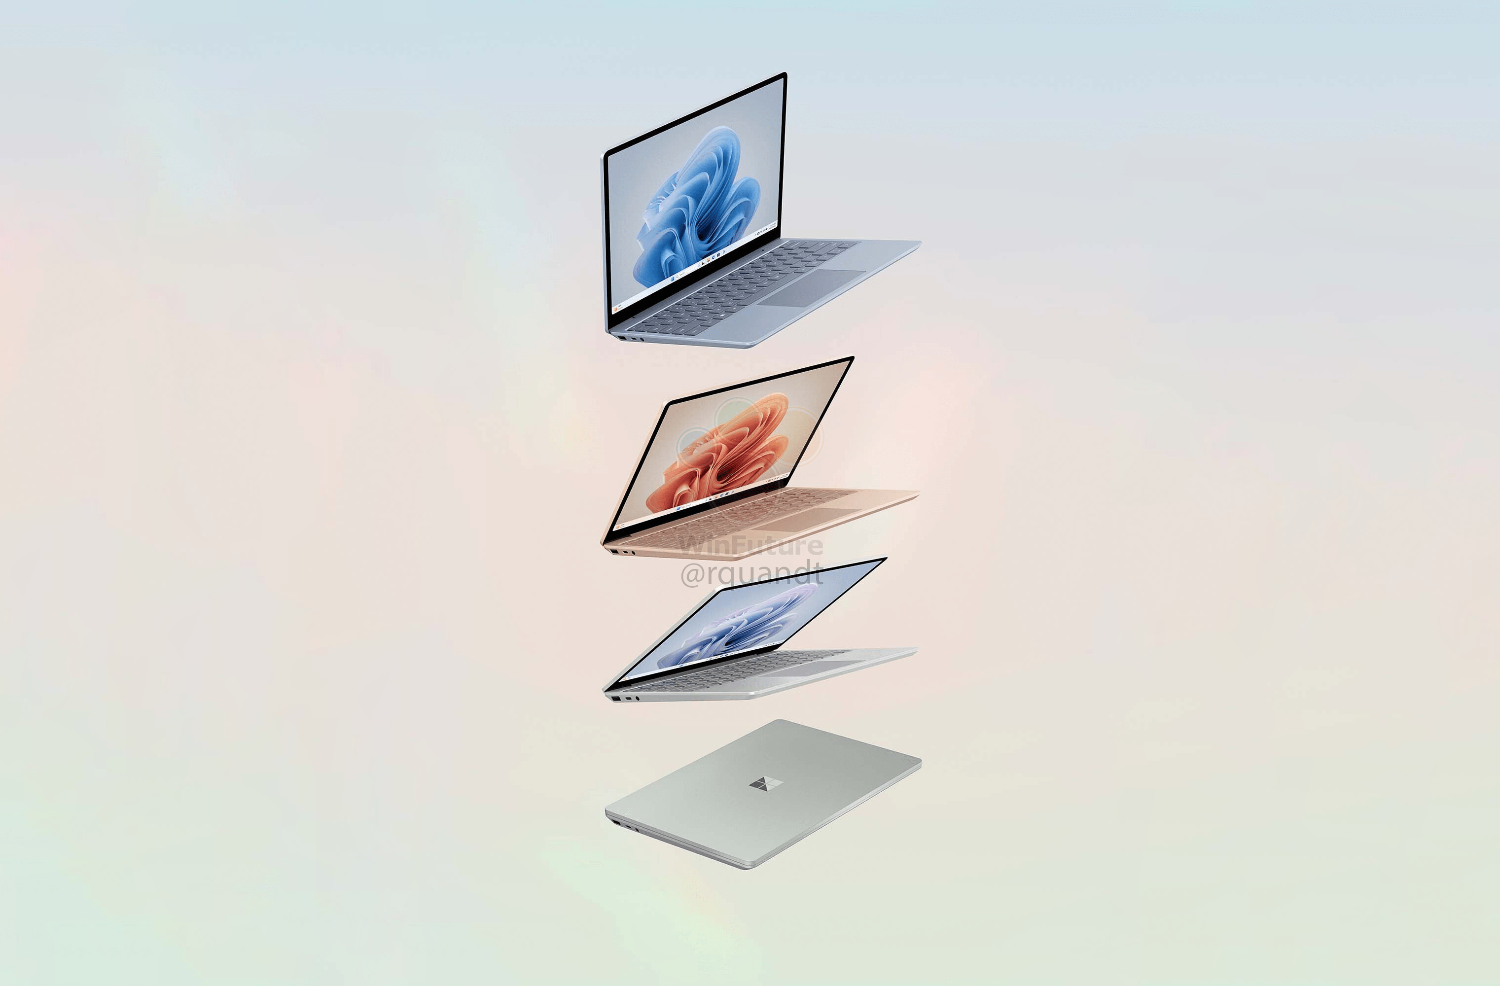 В Сеть слили качественные фото аналога MacBook Air от Microsoft